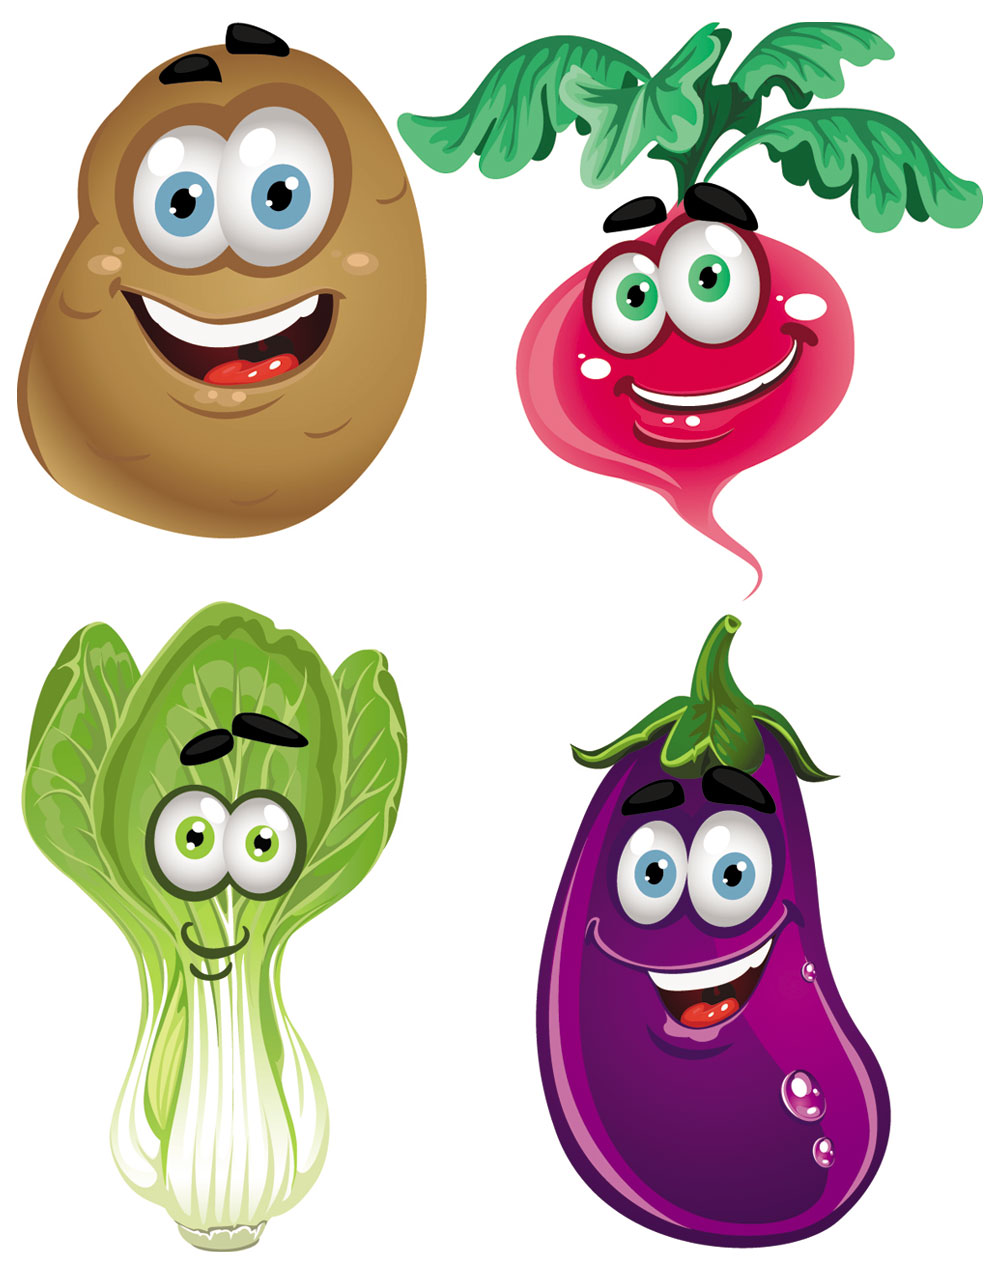 Vegetable Cartoon Image Vector 2   Download Free Vectors